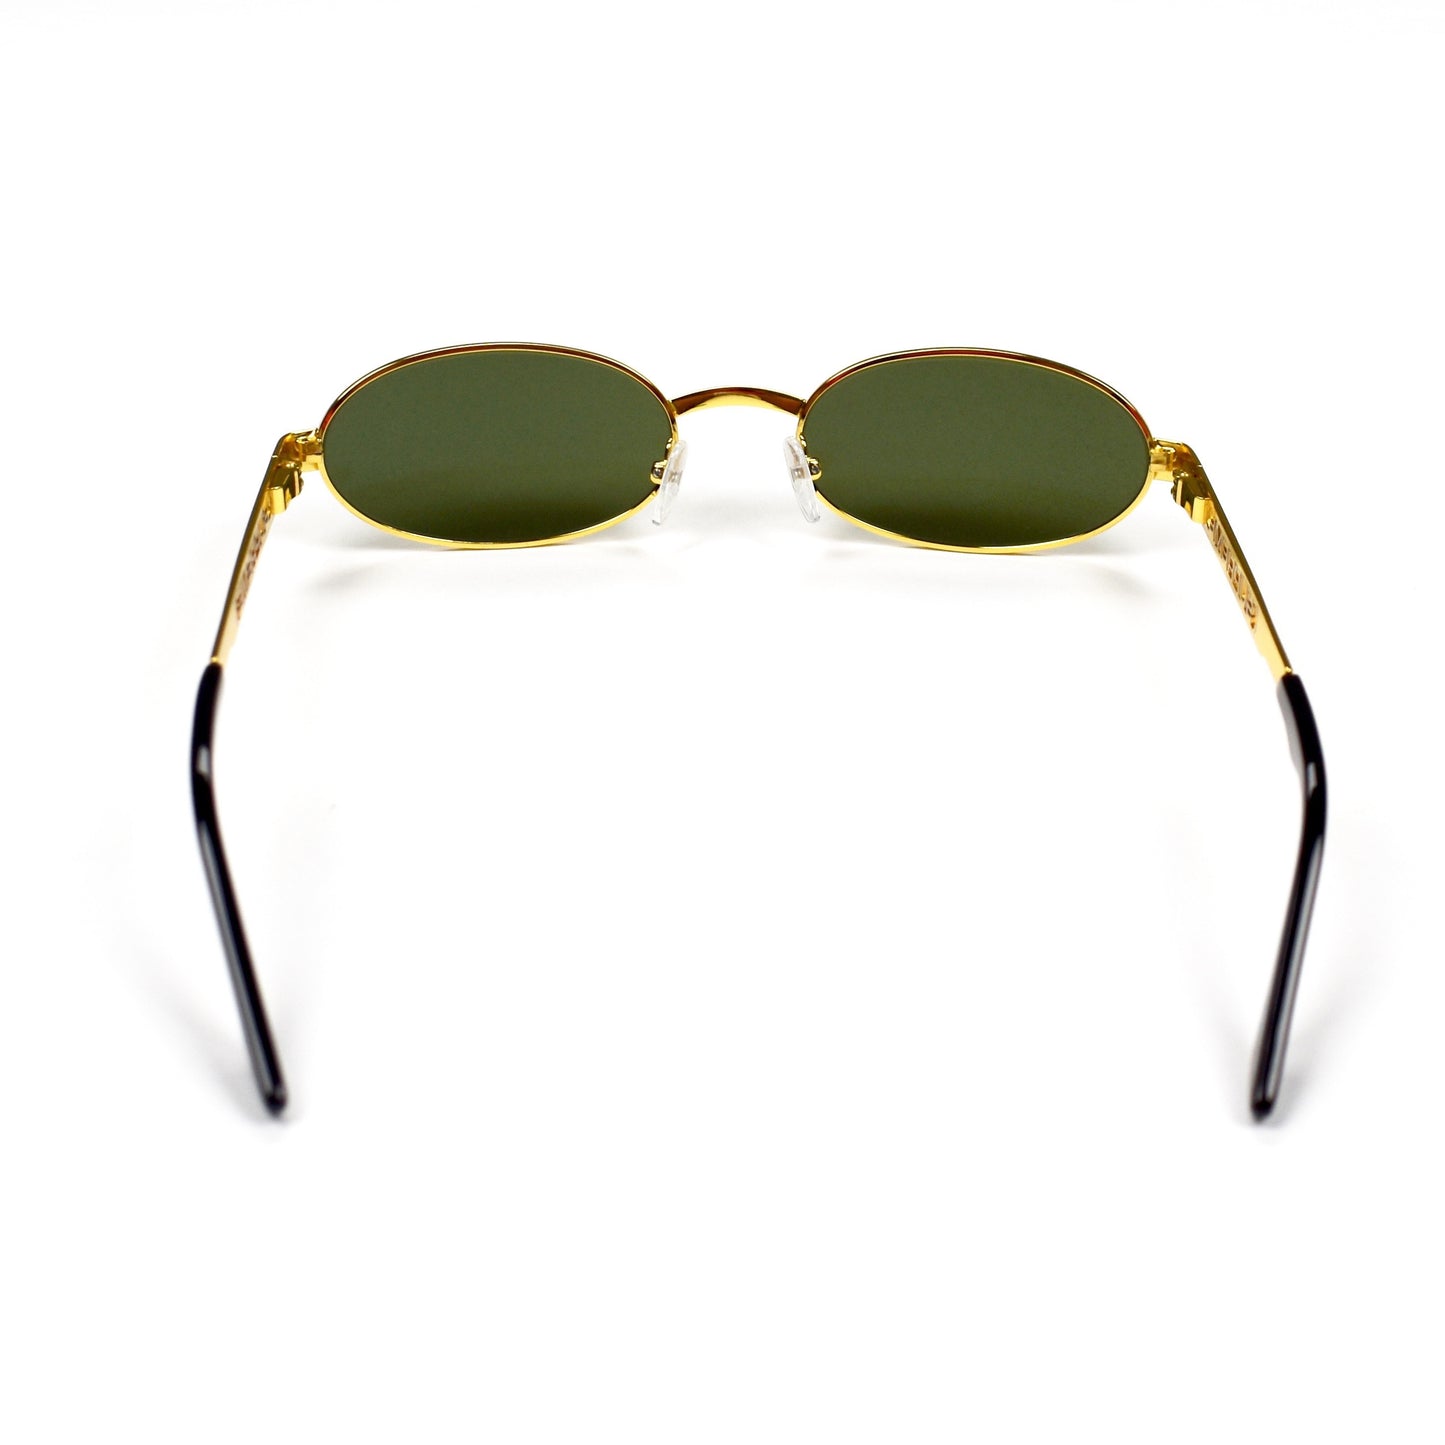 Supreme - Gold Oval Brooks Sunglasses